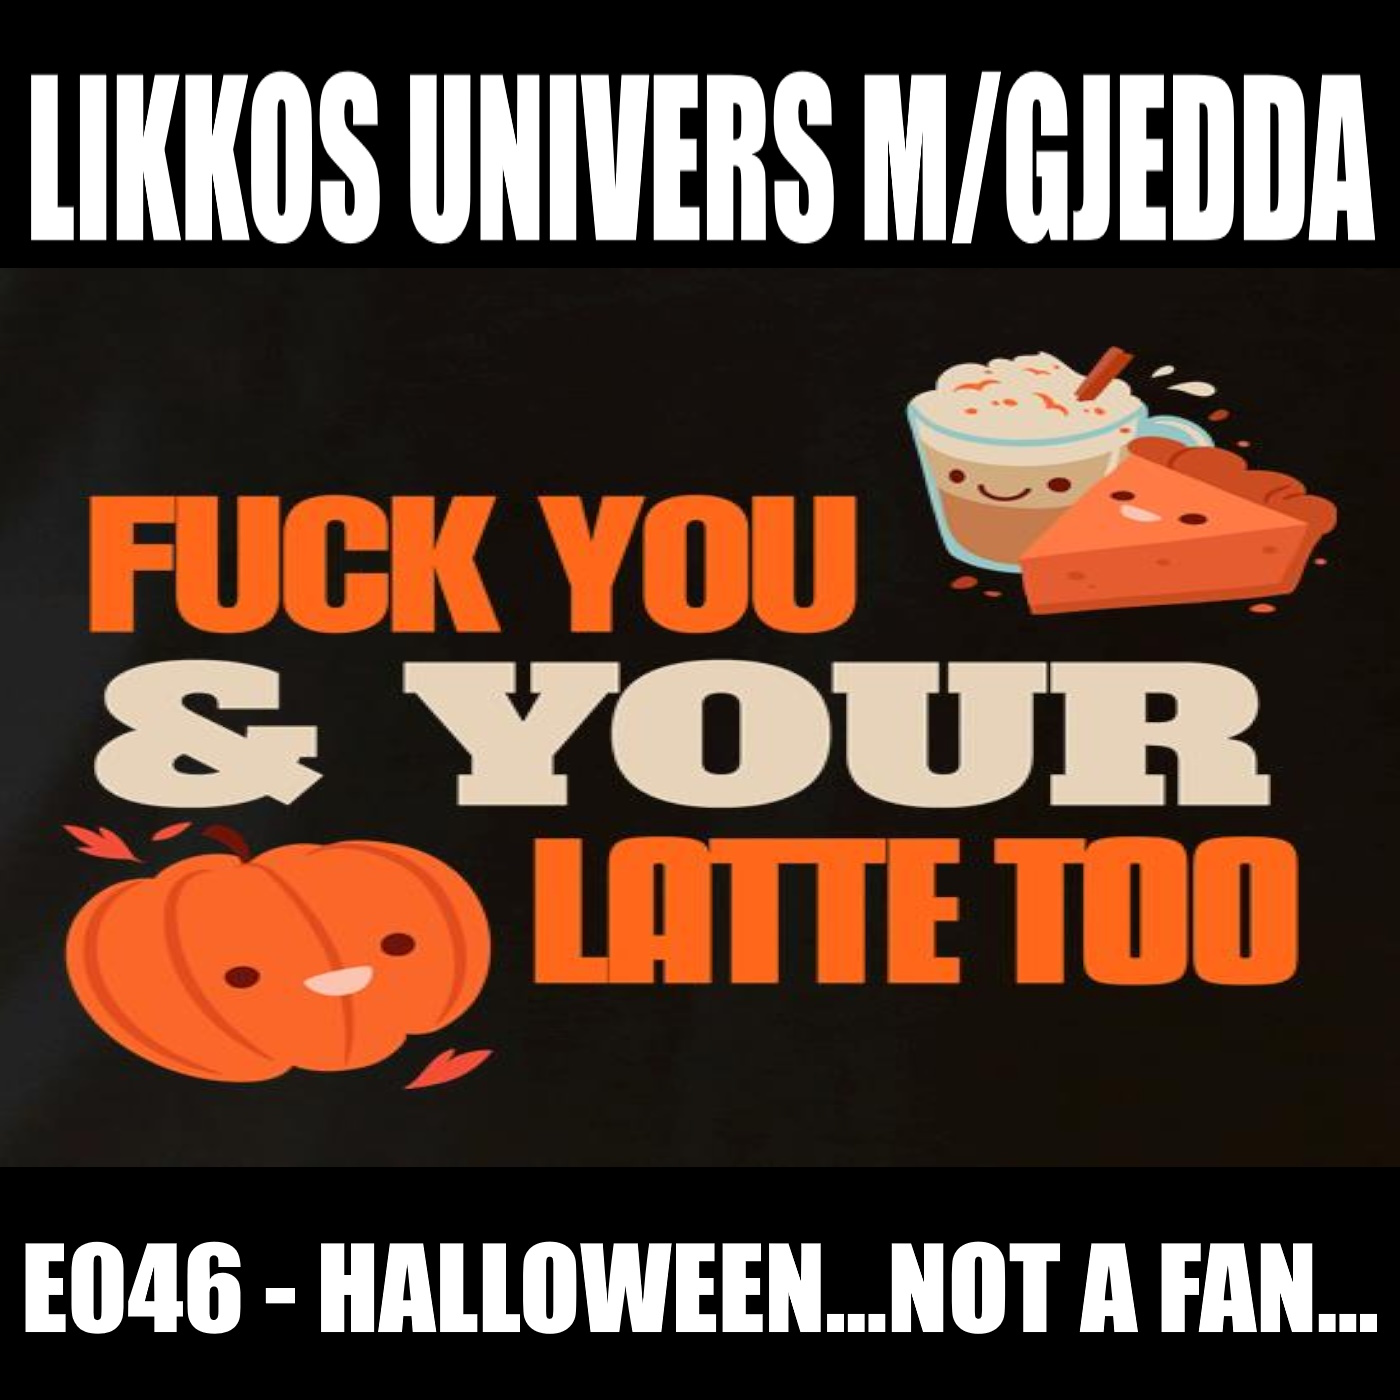 Gjesteepisode - Likkos univers m/Gjedda E046 - Halloween... not a fan...